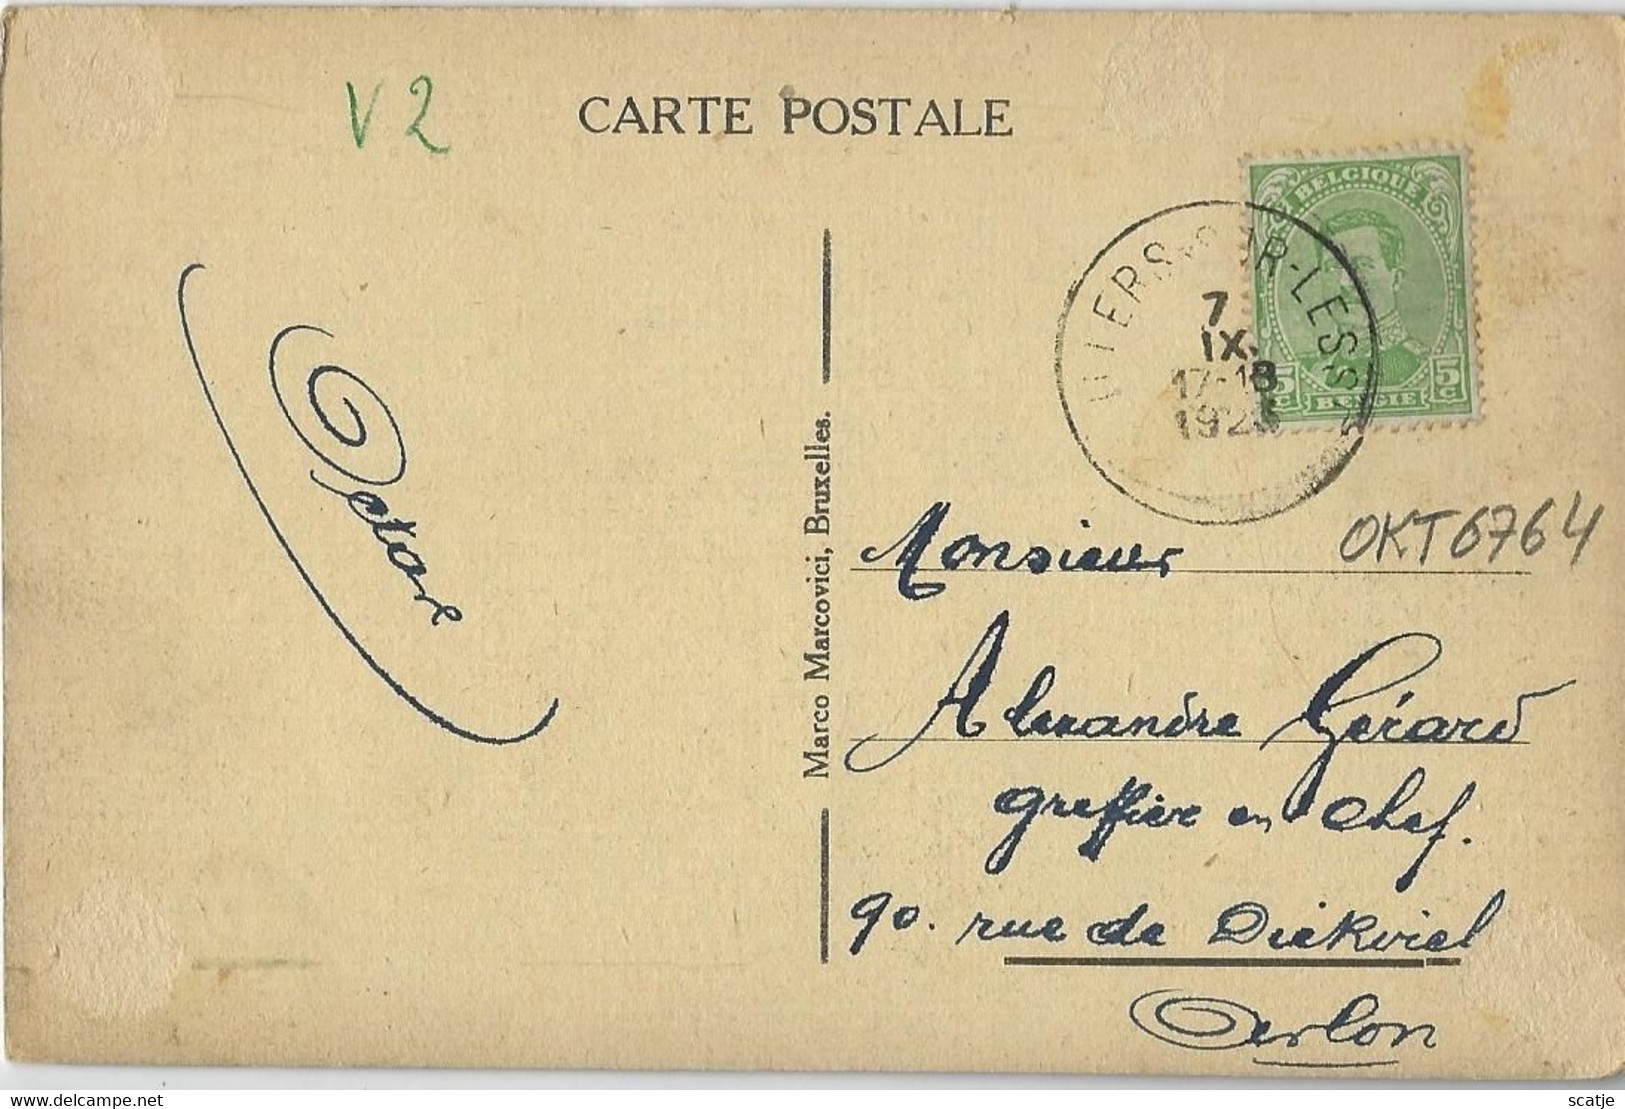 Villers-s/Lesse.   -   Château Riyal De Ciertgnon Et La Lesse.  -   1926  Naar   Arlon - Rochefort